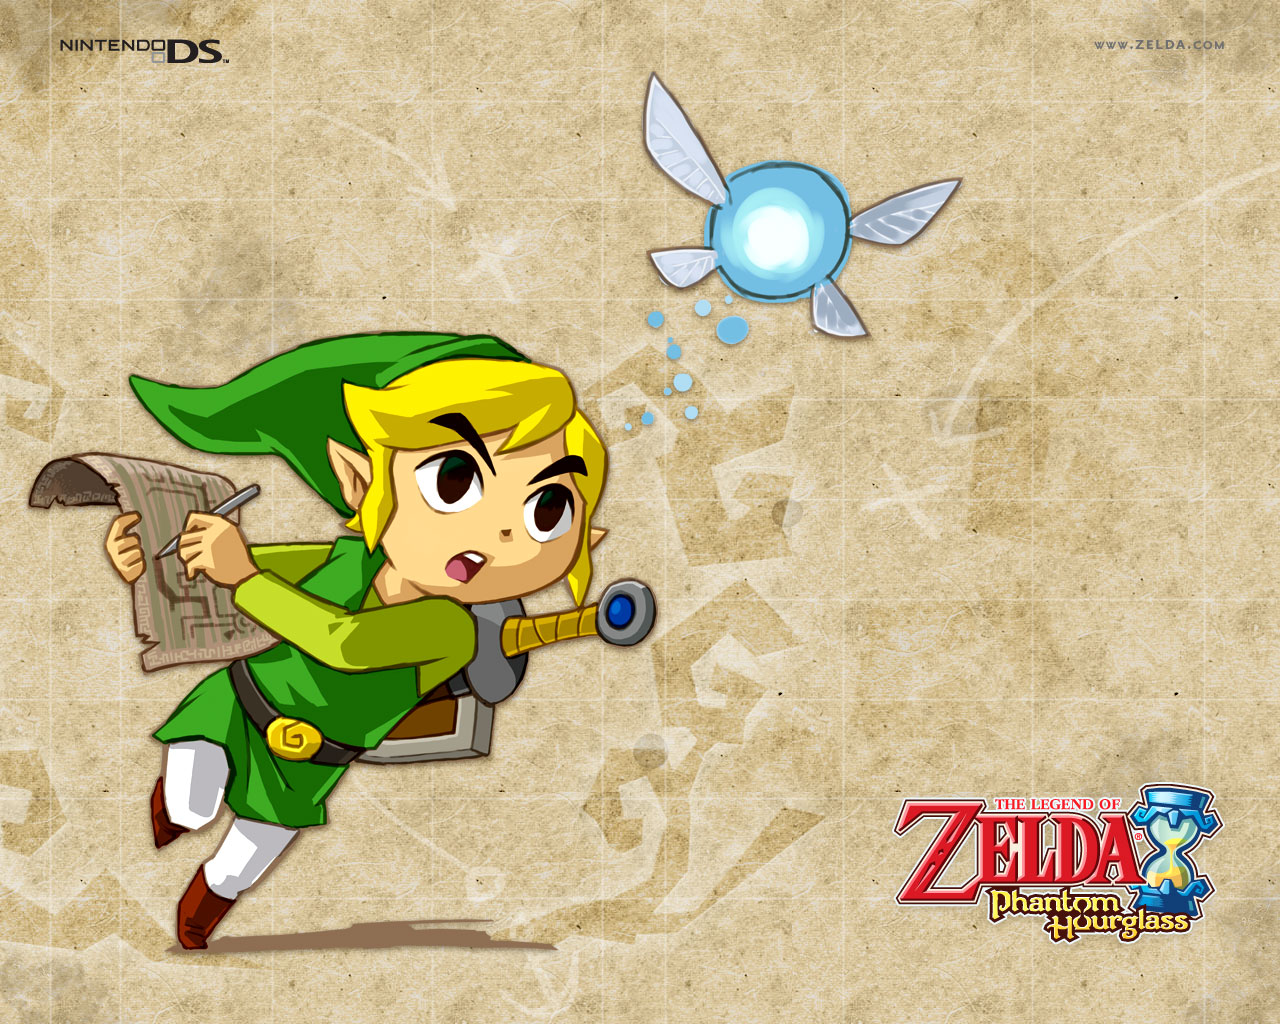 The Legend of Zelda: Phantom Hourglass Wallpapers